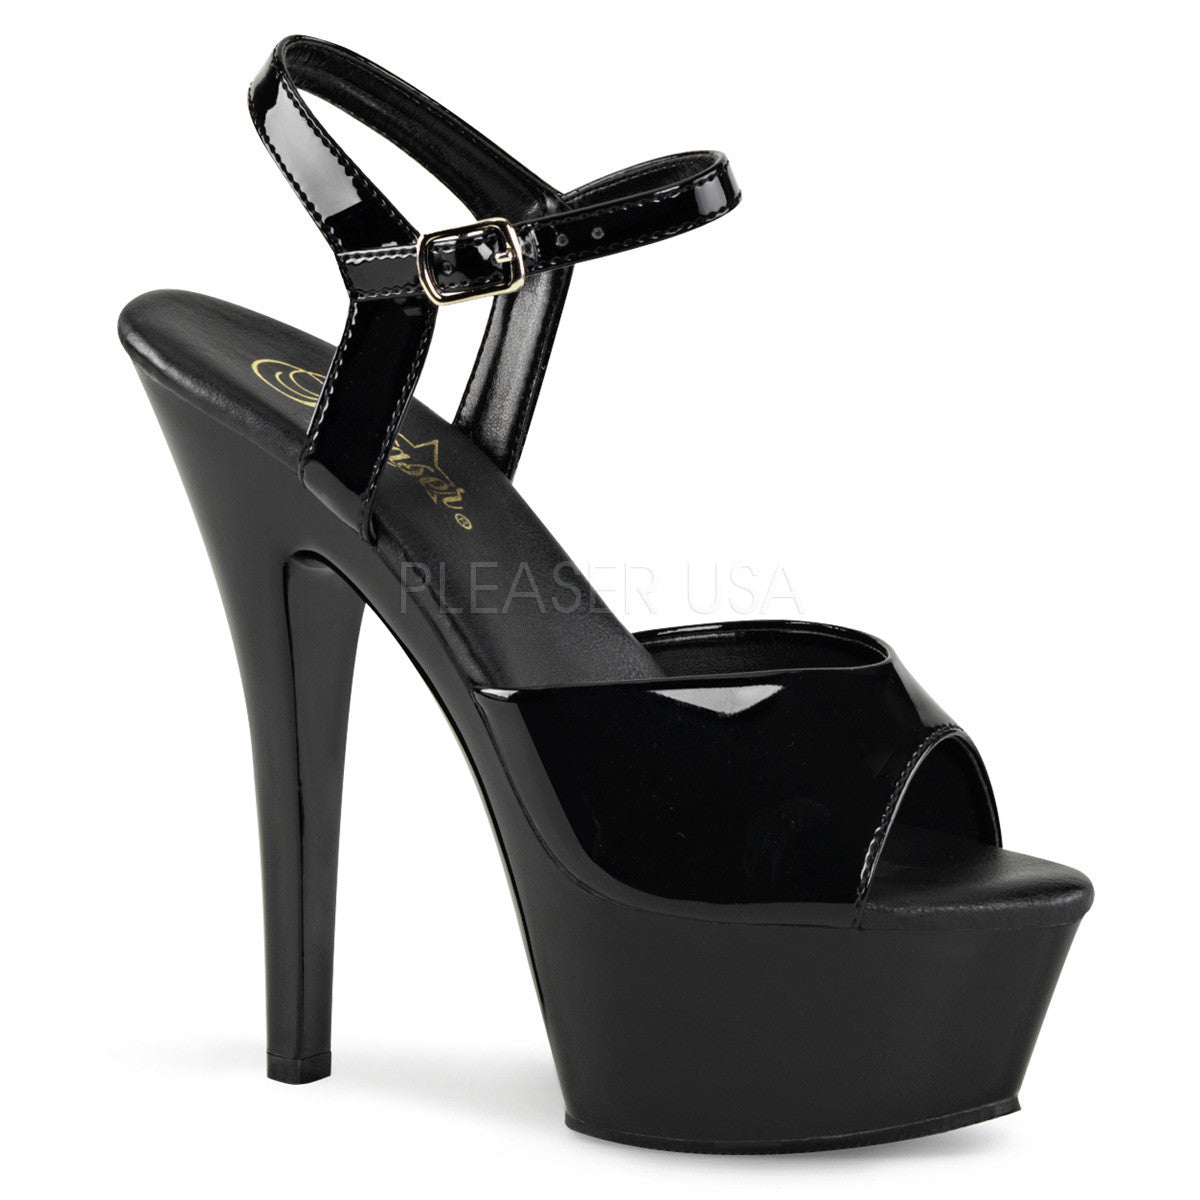 Pleaser KISS-209VL Black Patent Ankle Strap Sandals - Shoecup.com